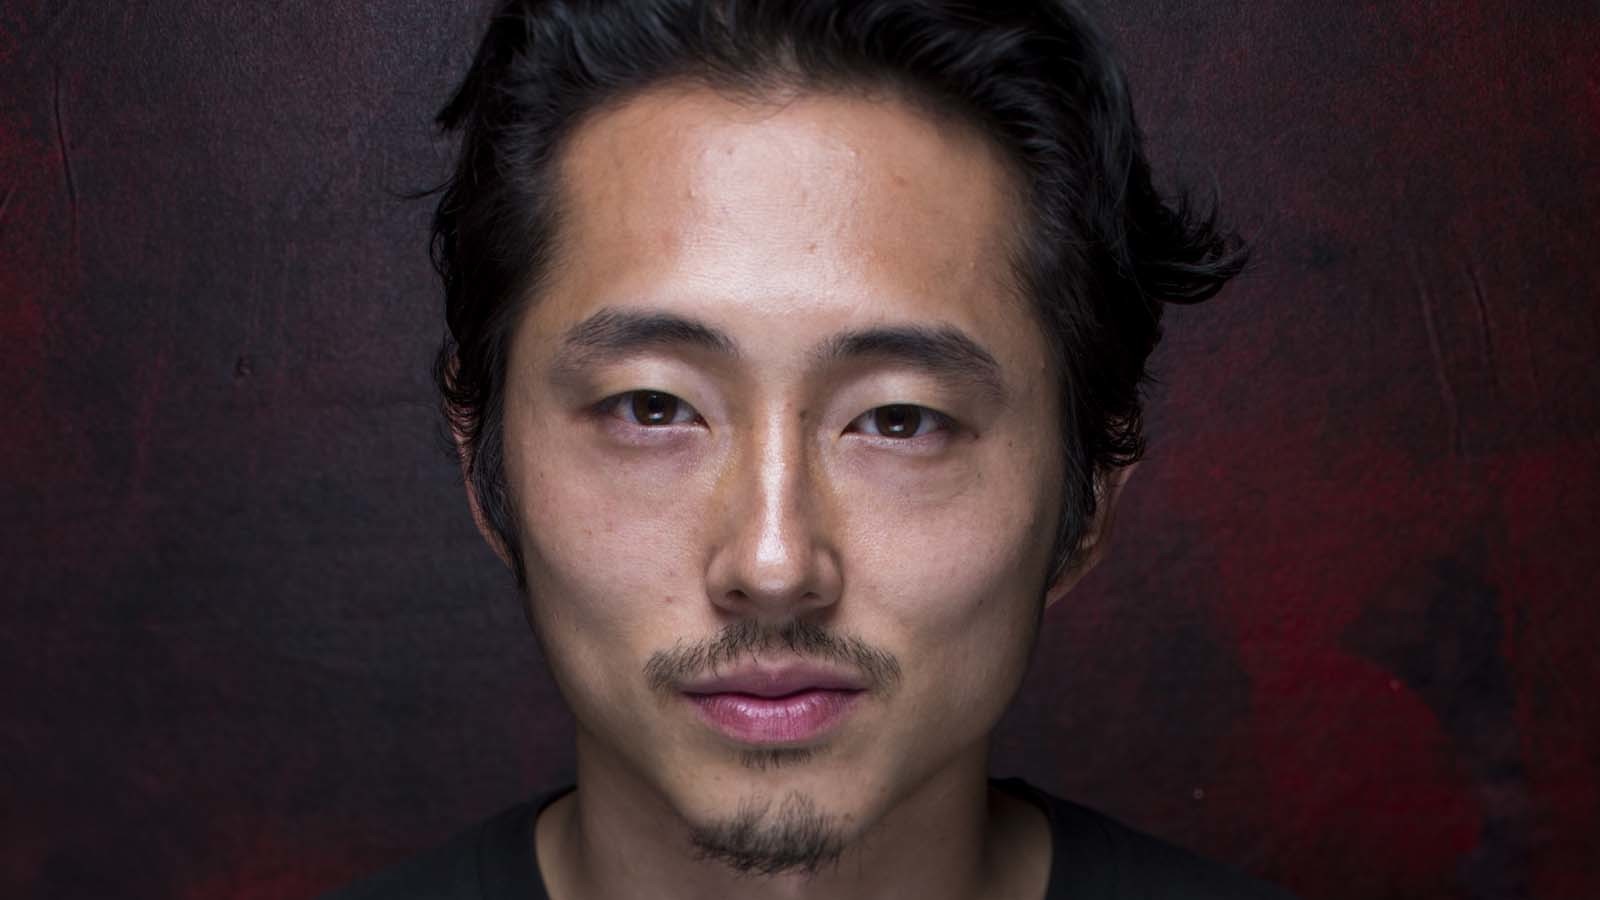 The Walking Dead | “Fiquei feliz por ter meu crânio esmagado na série”, diz Steven Yeun